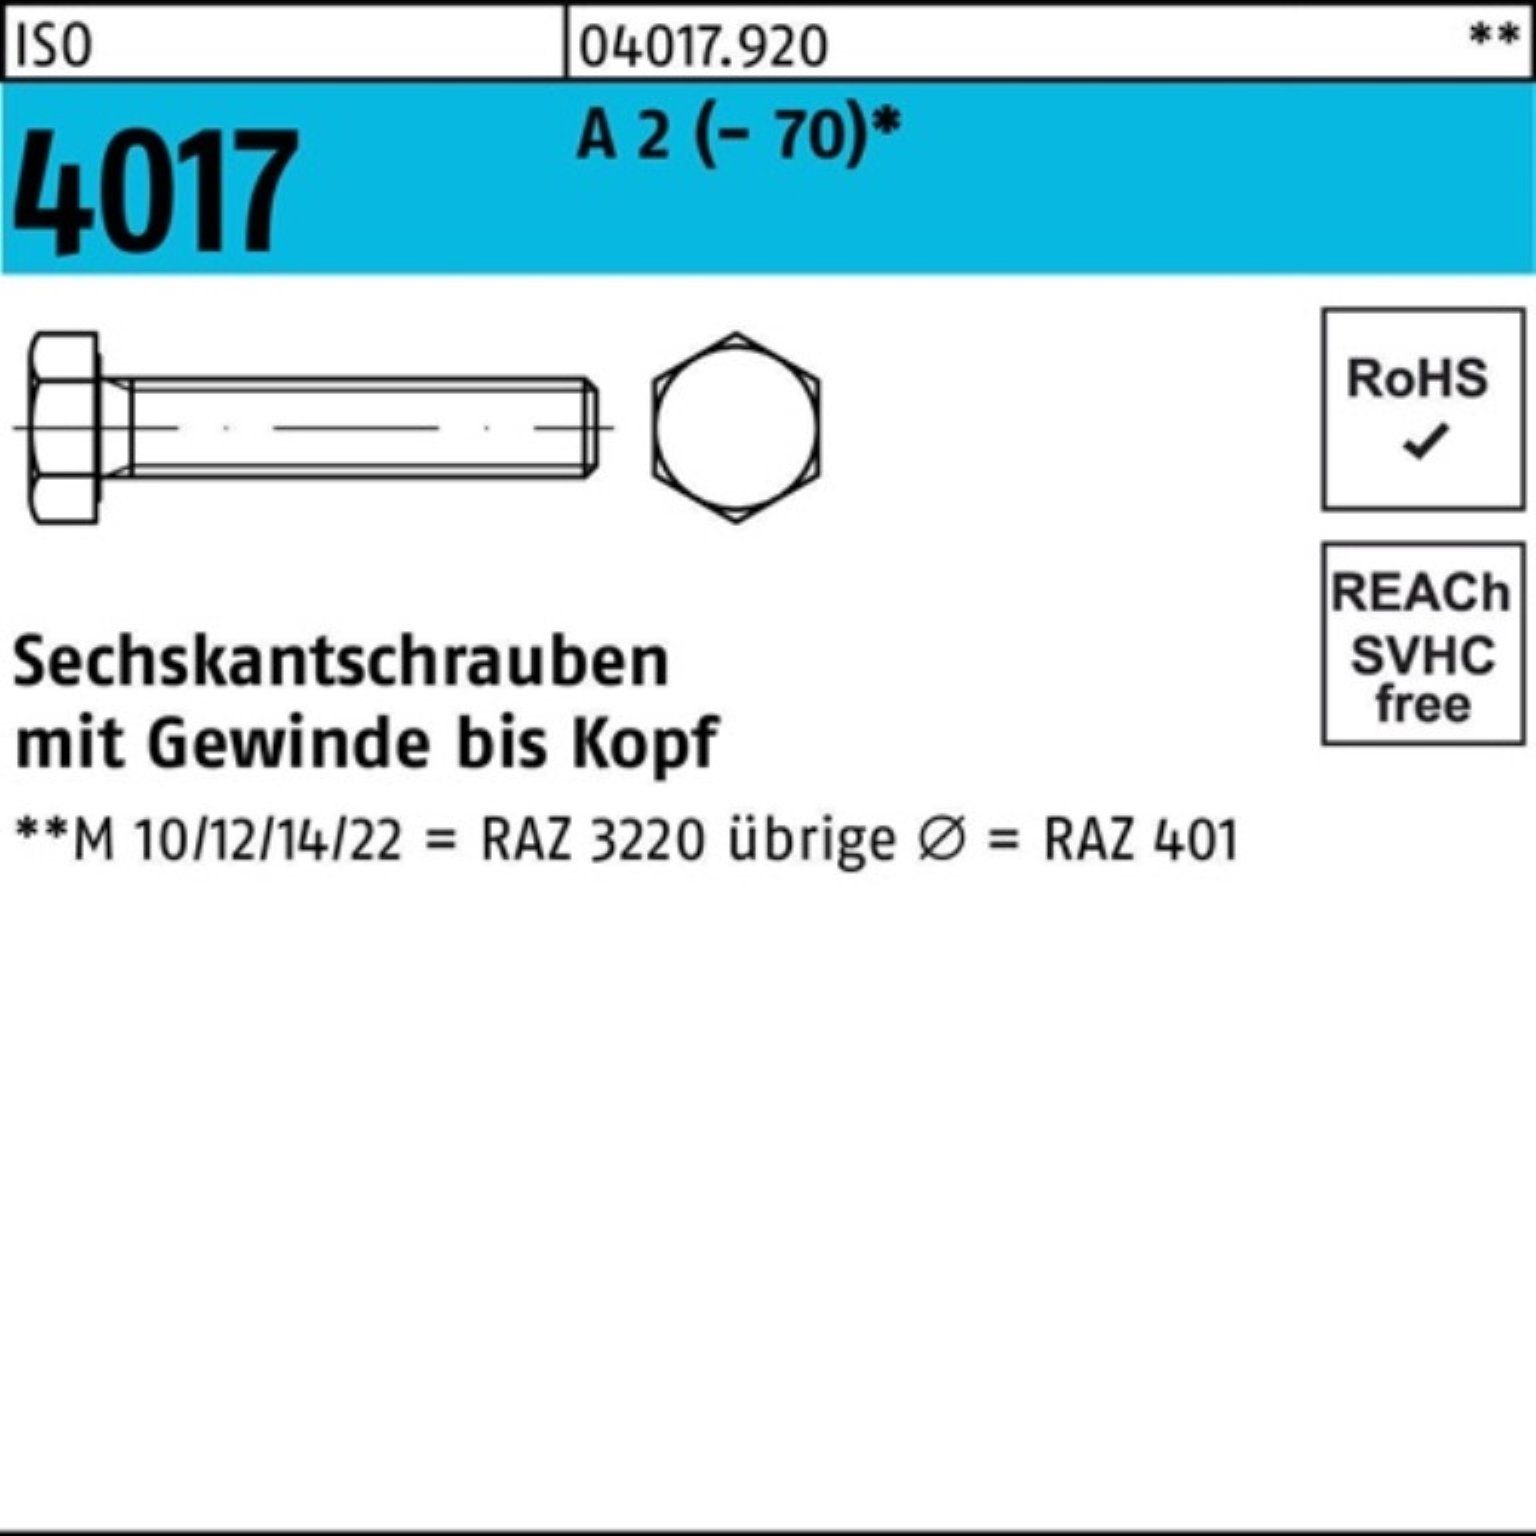 Bufab Sechskantschraube 200er Pack Sechskantschraube ISO 4017 VG M8x 35 A 2 (70) 200 Stück